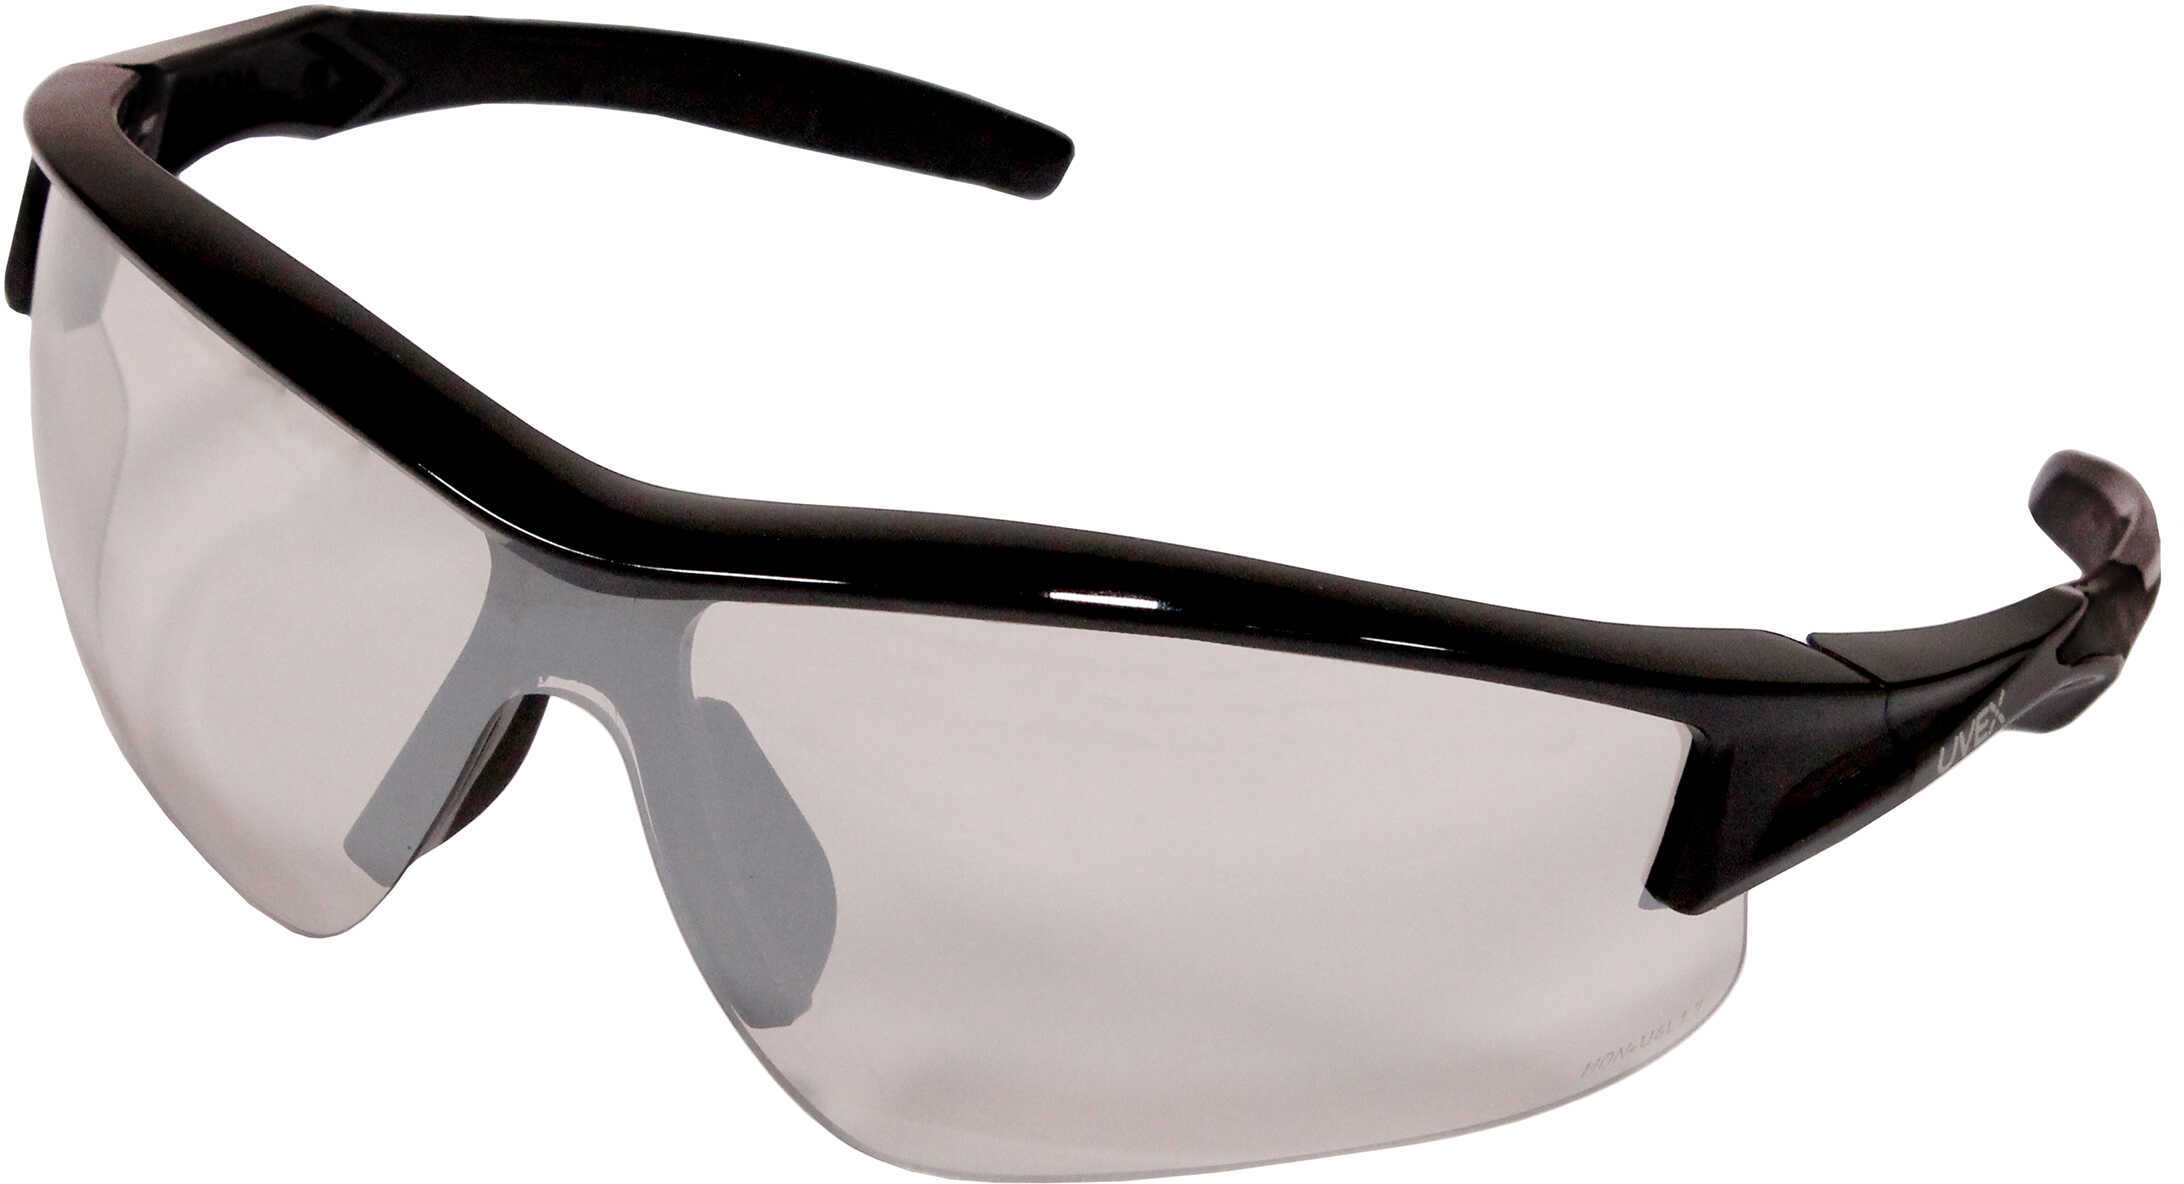 Howard Leight Acadia Safety Eyewear w/Hardcoat Lens SCT Reflect 50 Md: R-02216